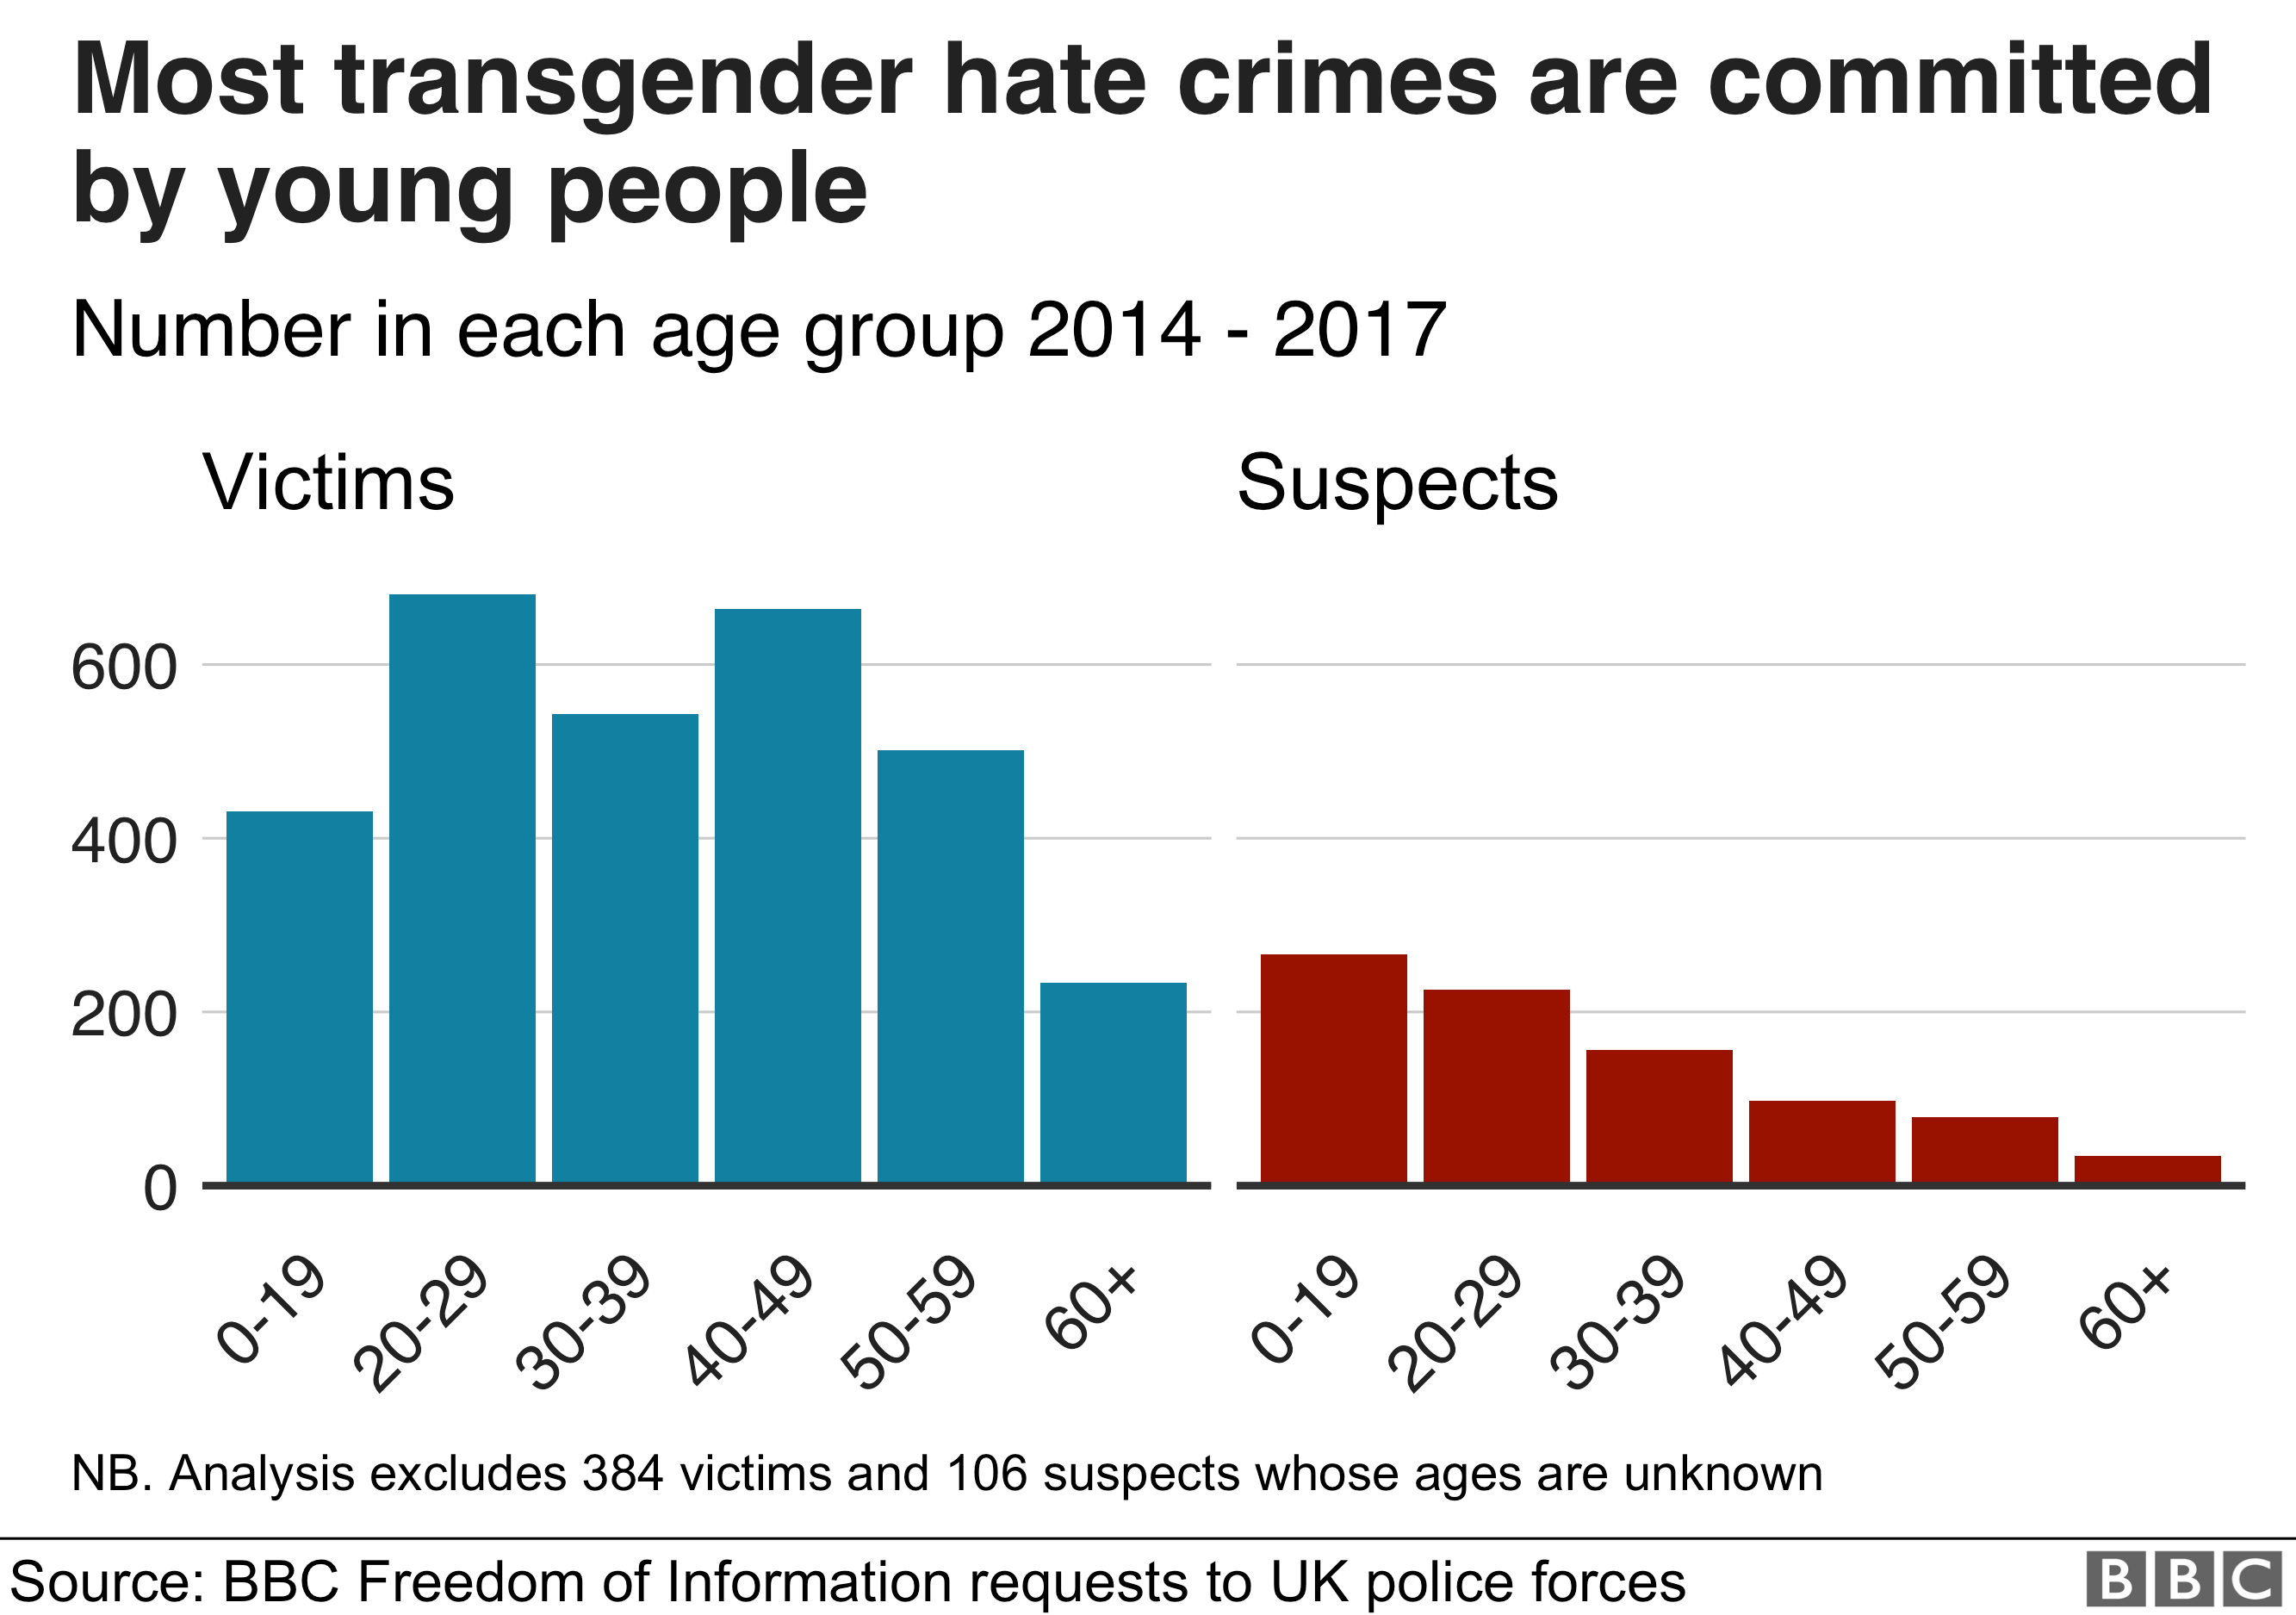 Большинство трансгендерных преступлений на почве ненависти совершаются молодыми людьми. Жертвы довольно равномерно распределены по возрастным группам от 20 до 60 лет